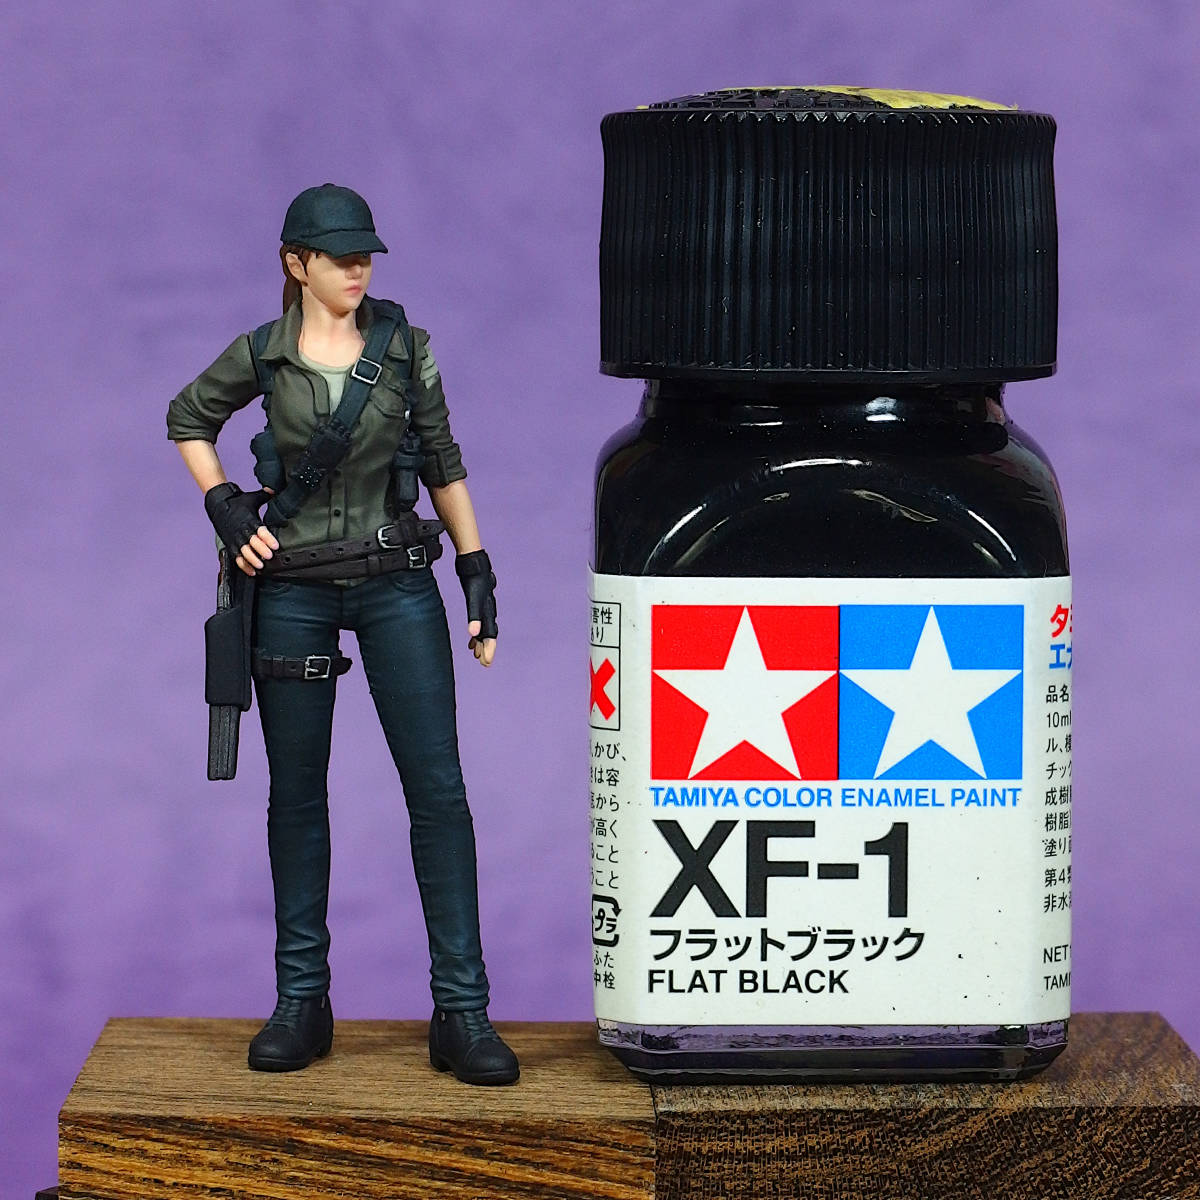 [147] 完成品 1/35 女性フィギュア ナッツプラネット/トリガーライン 女性兵士 斥候兵 スカウター Painted and Built Figure 50mm_サイズ比較。50mmの小瓶よりも小さいです